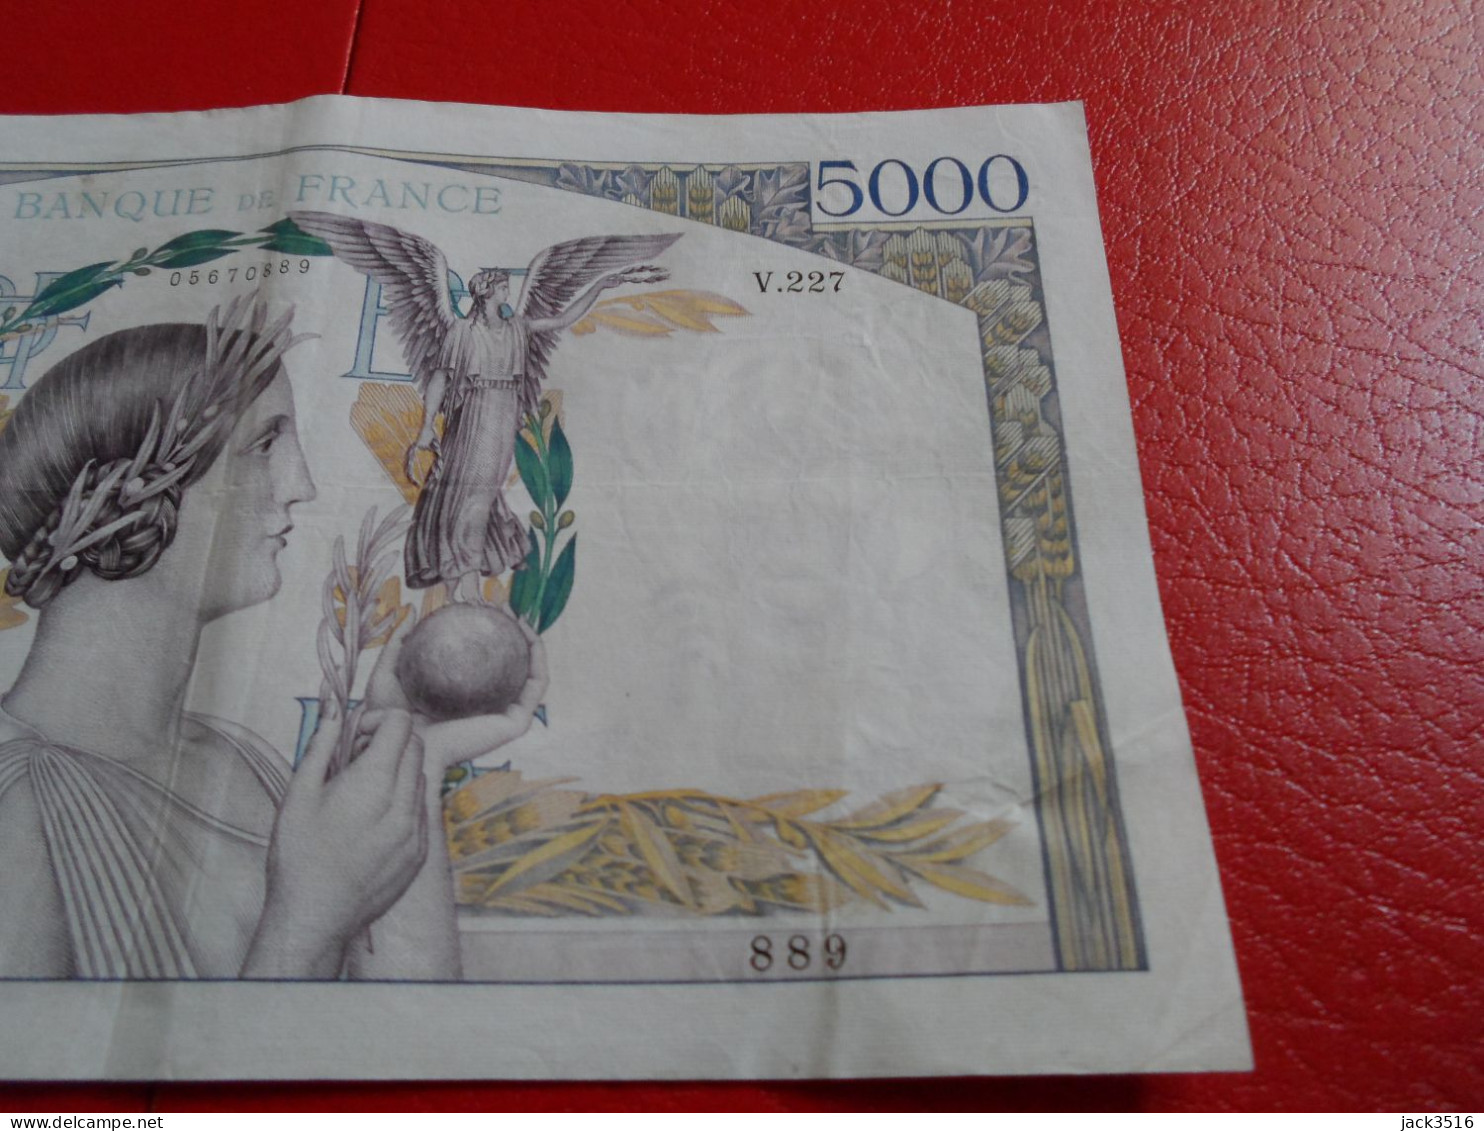 France: 3 billets de 5000 francs victoire 1939 no se suivent rare lire descript